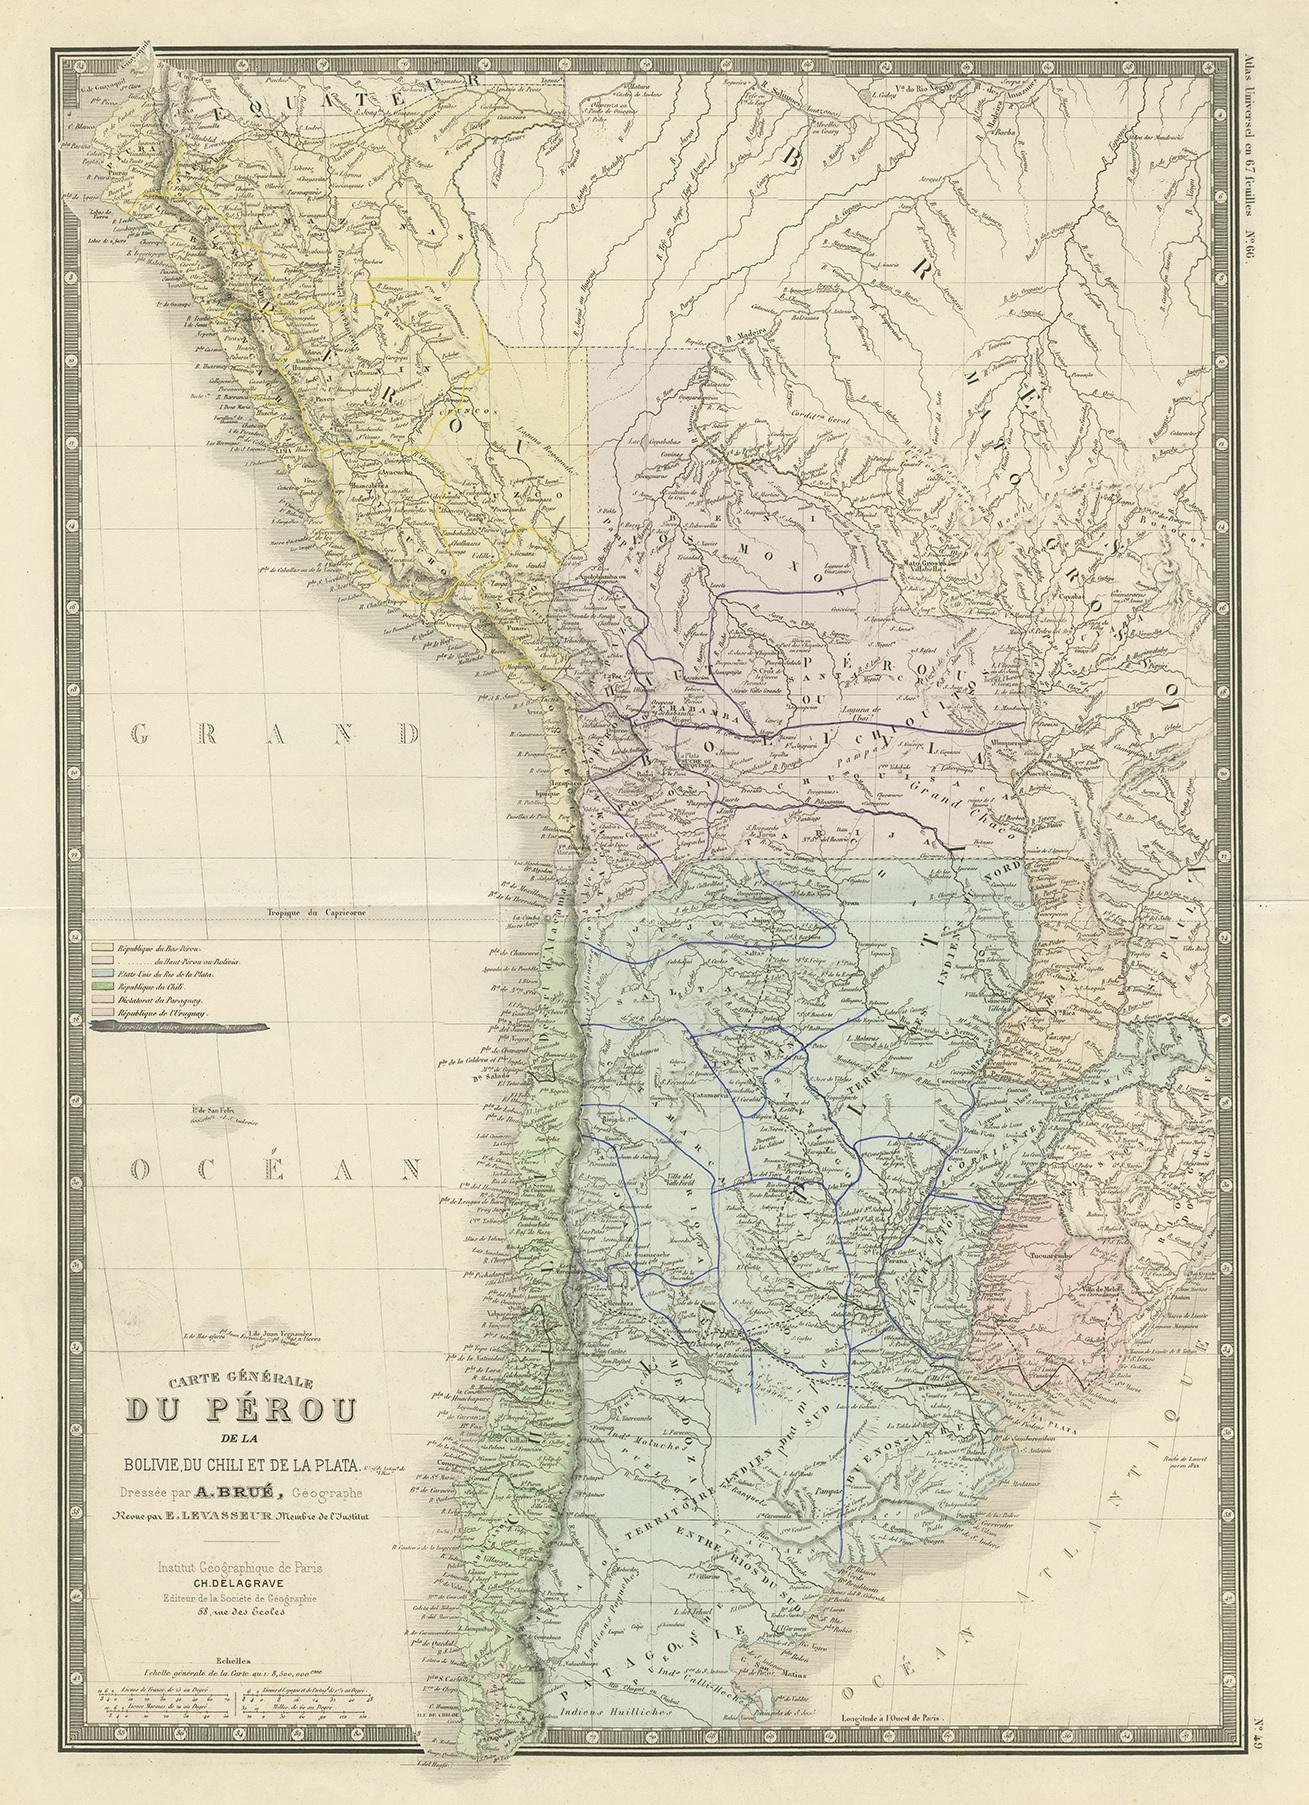 Antique map titled 'Carte générale du Pérou'. Large map of Peru. This map originates from 'Atlas de Géographie Moderne Physique et Politique' by A. Levasseur. Published 1875.